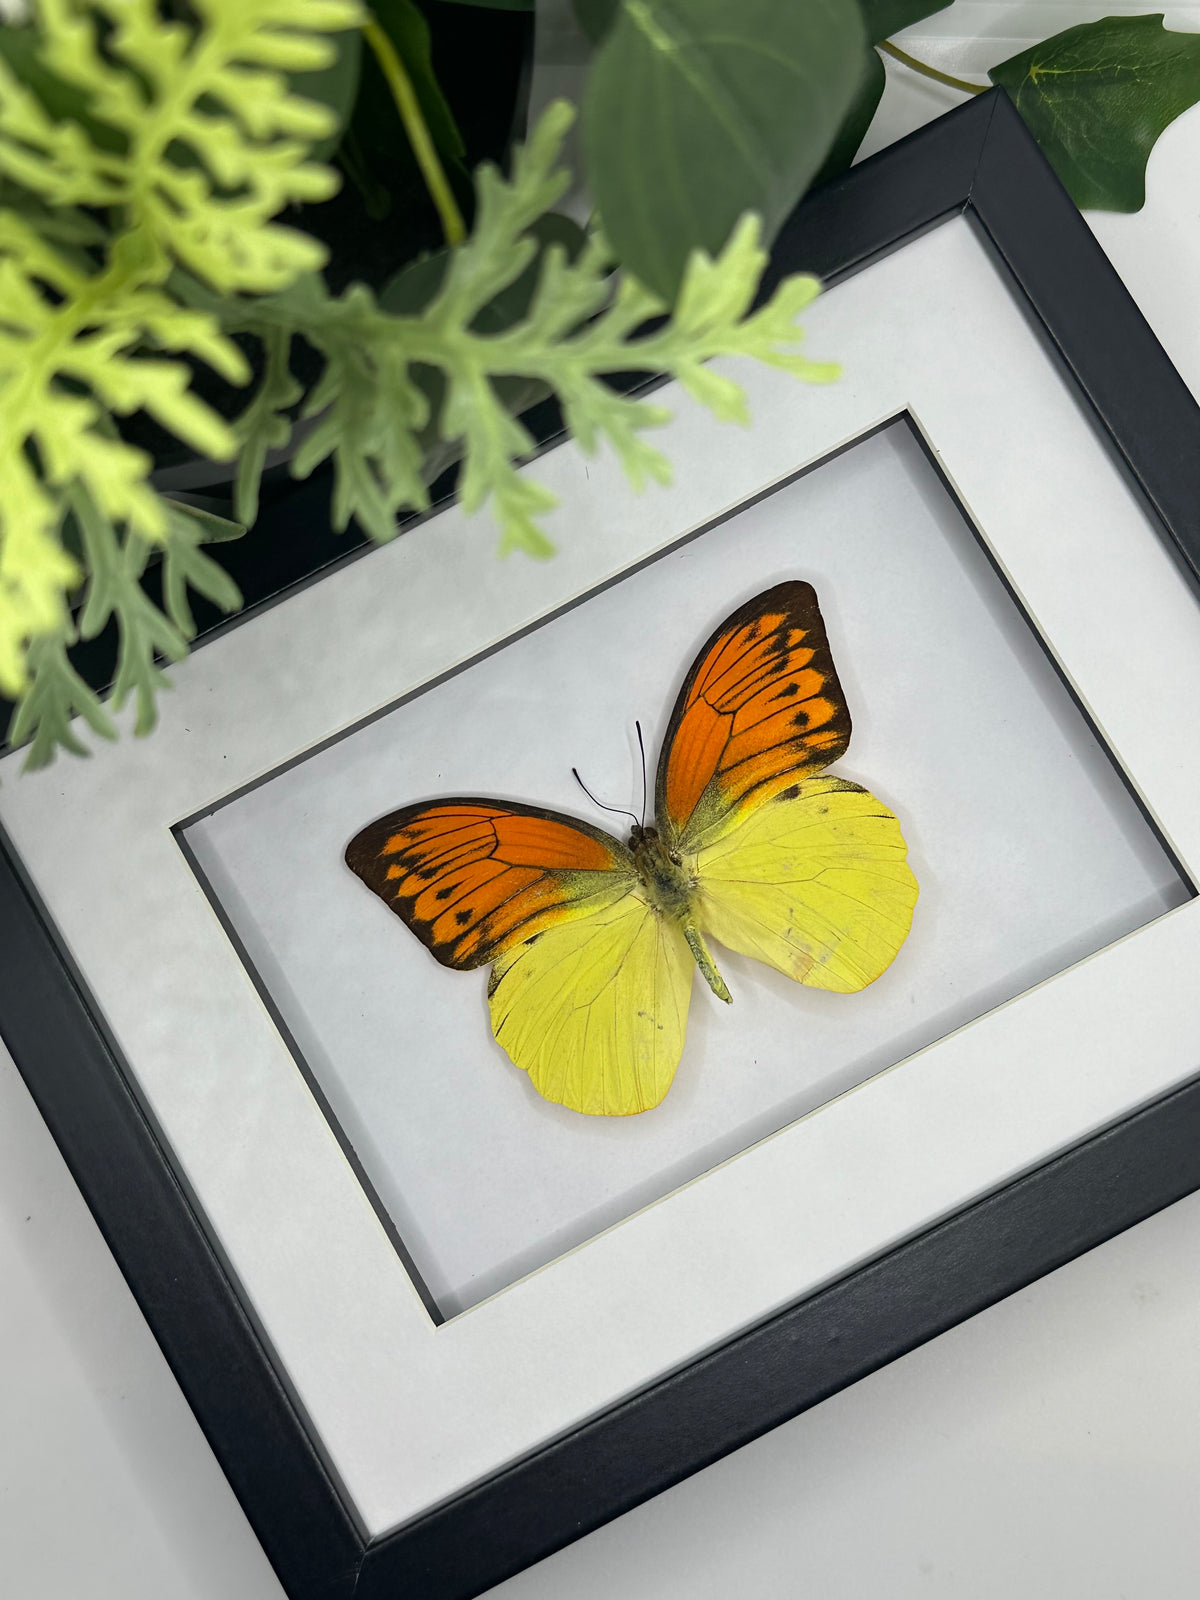 Orange Tip Butterfly / Hebomoia Leucippe in a frame